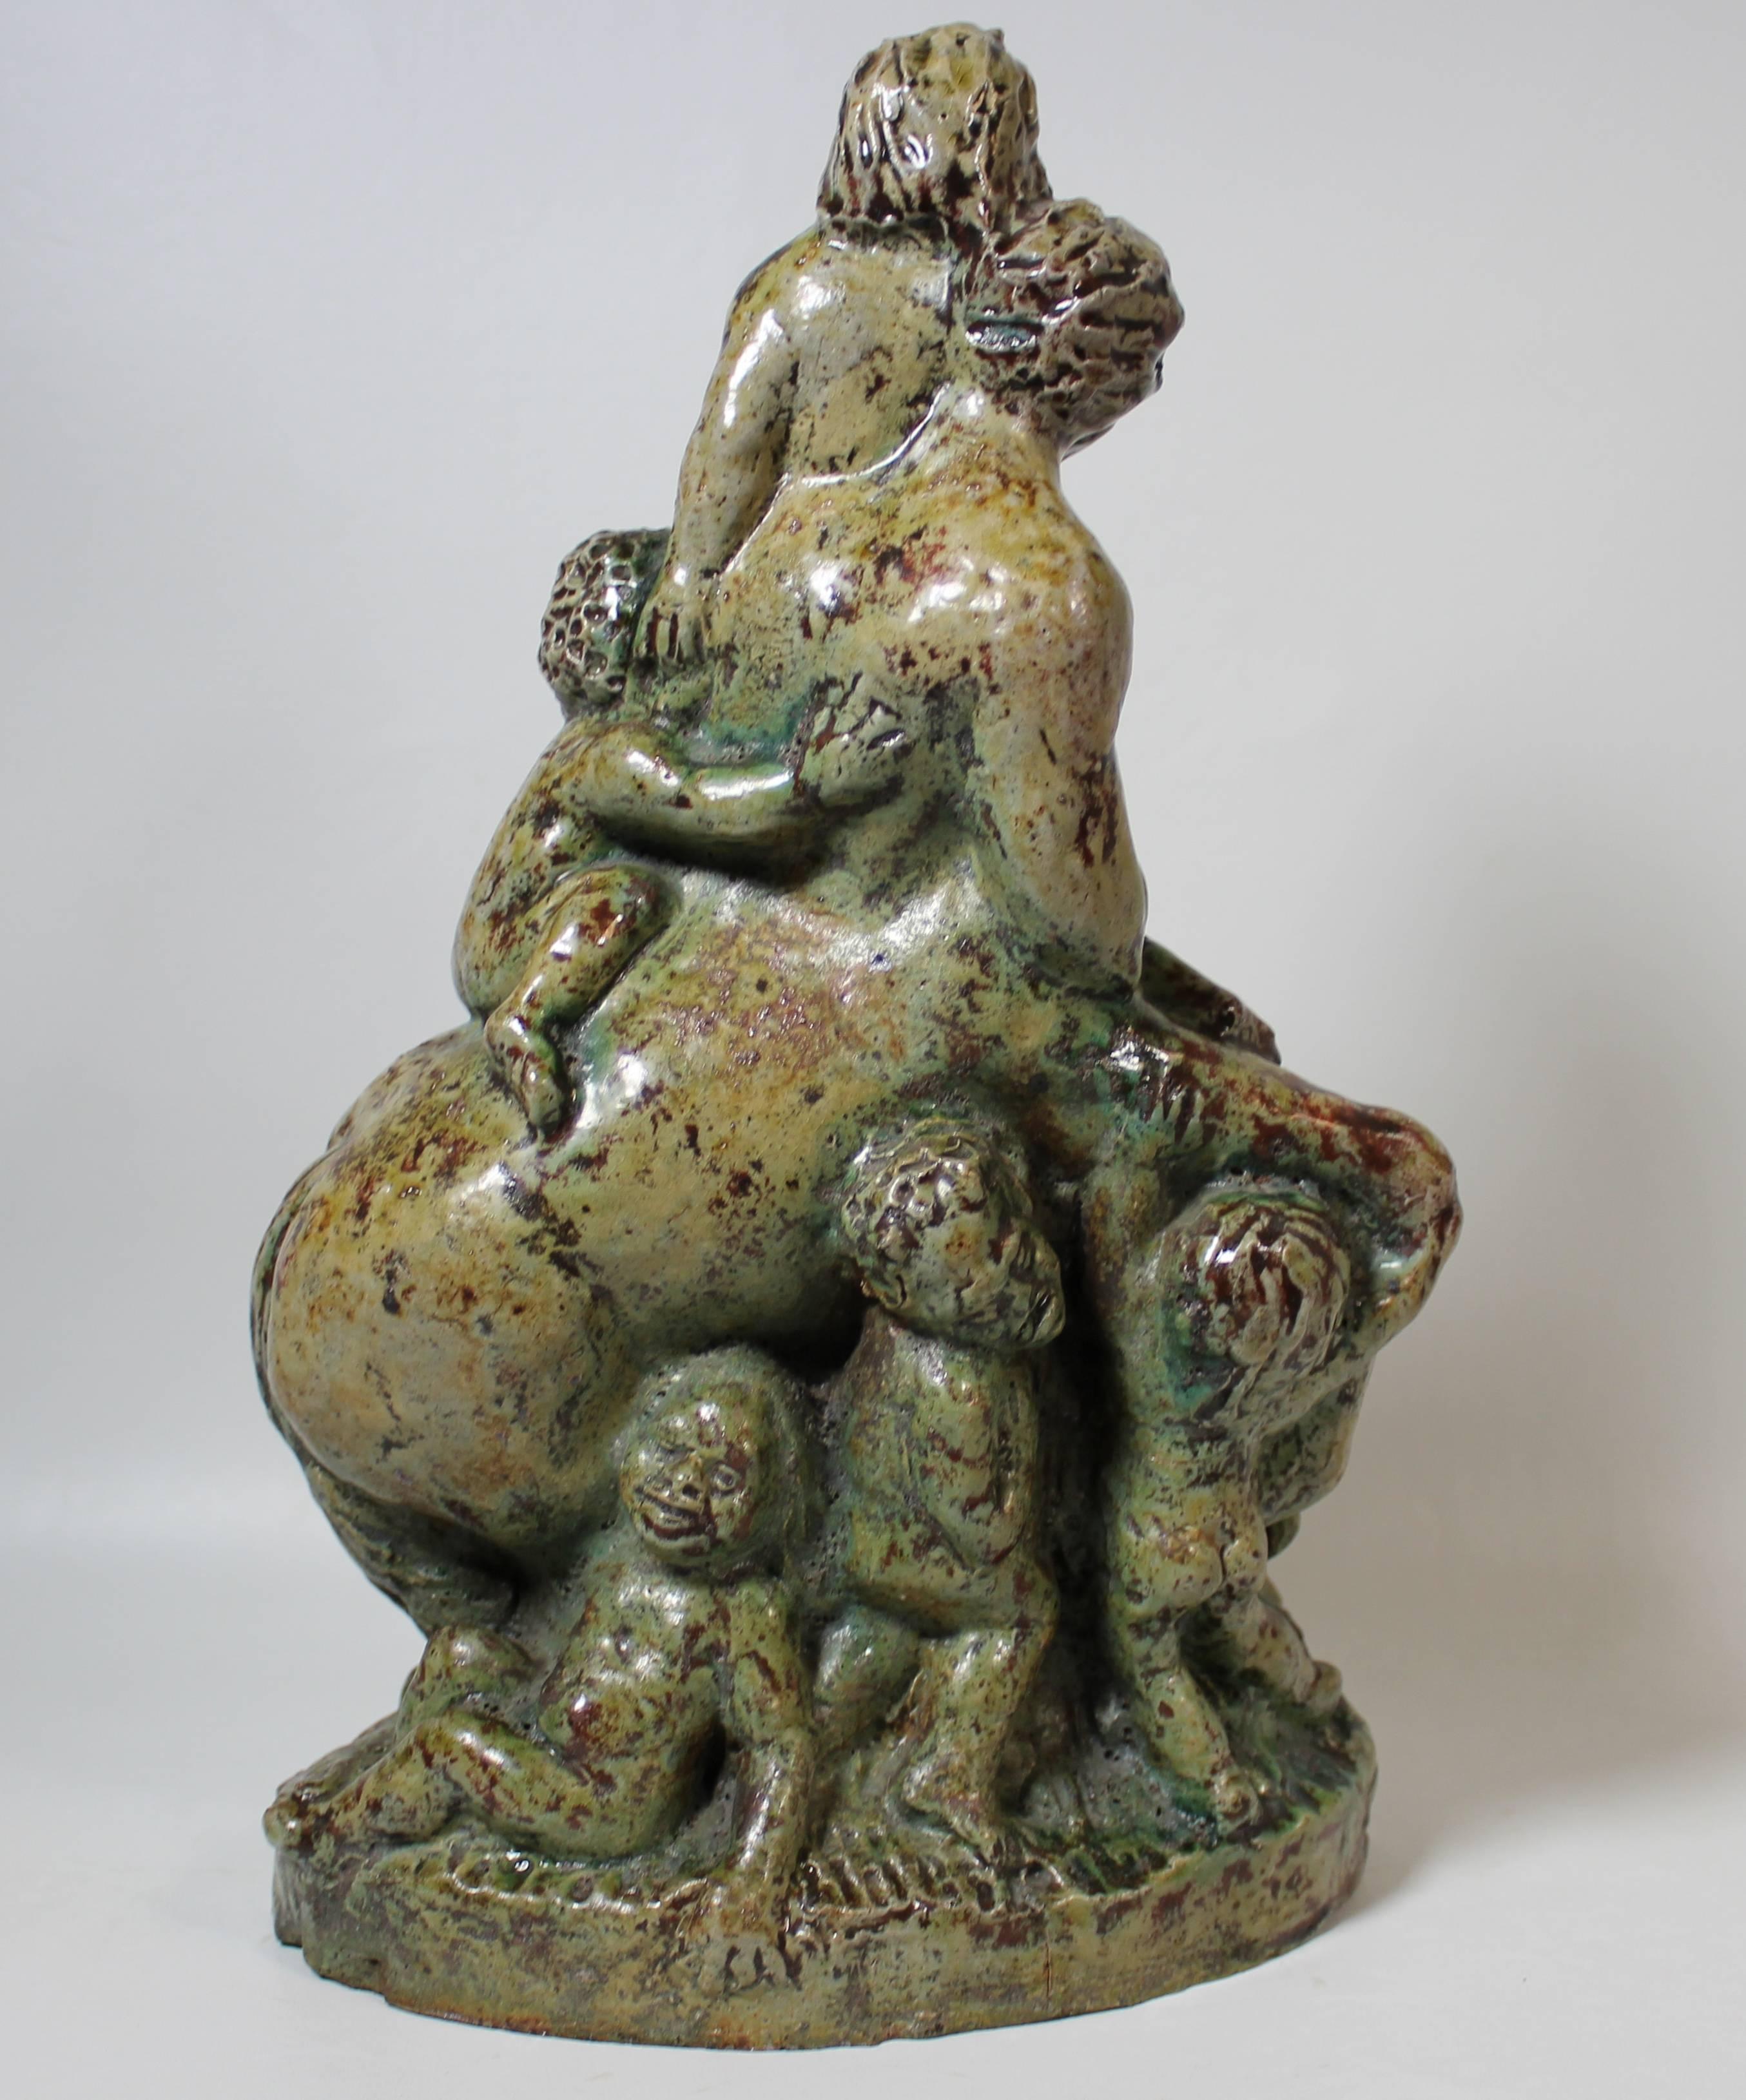 Terraco Beesel Draak Keramik Skulptur eines mythologischen griechischen Satyrs mit gehörnten Kindern.